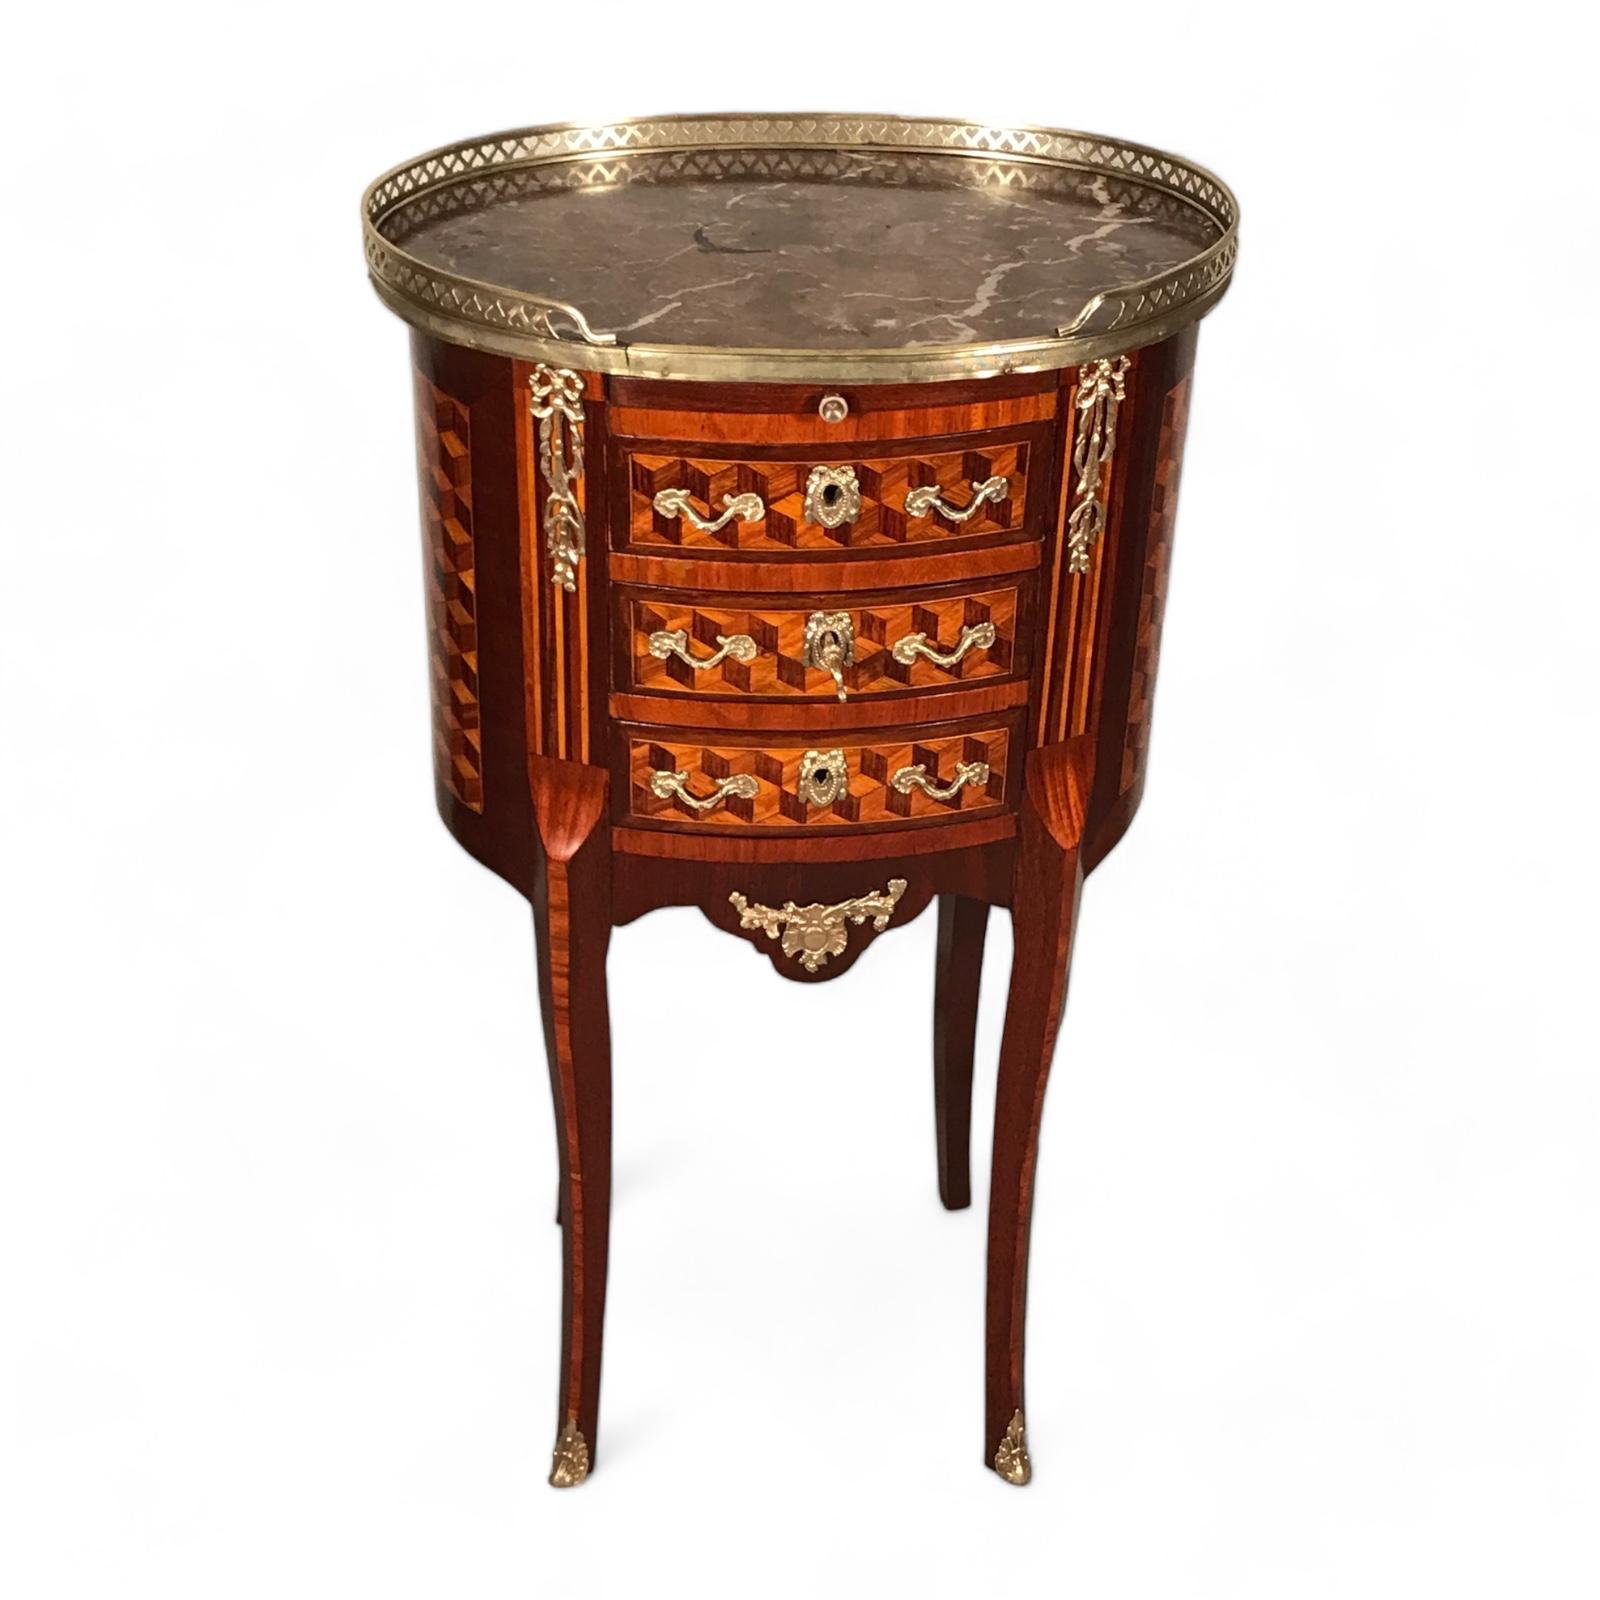 La table d'appoint Tambour de style Louis XVI est un meuble distingué, réputé pour son exquise marqueterie de blocs. Cette table d'appoint intemporelle comporte trois tiroirs et un plateau coulissant, offrant à la fois fonctionnalité et élégance,